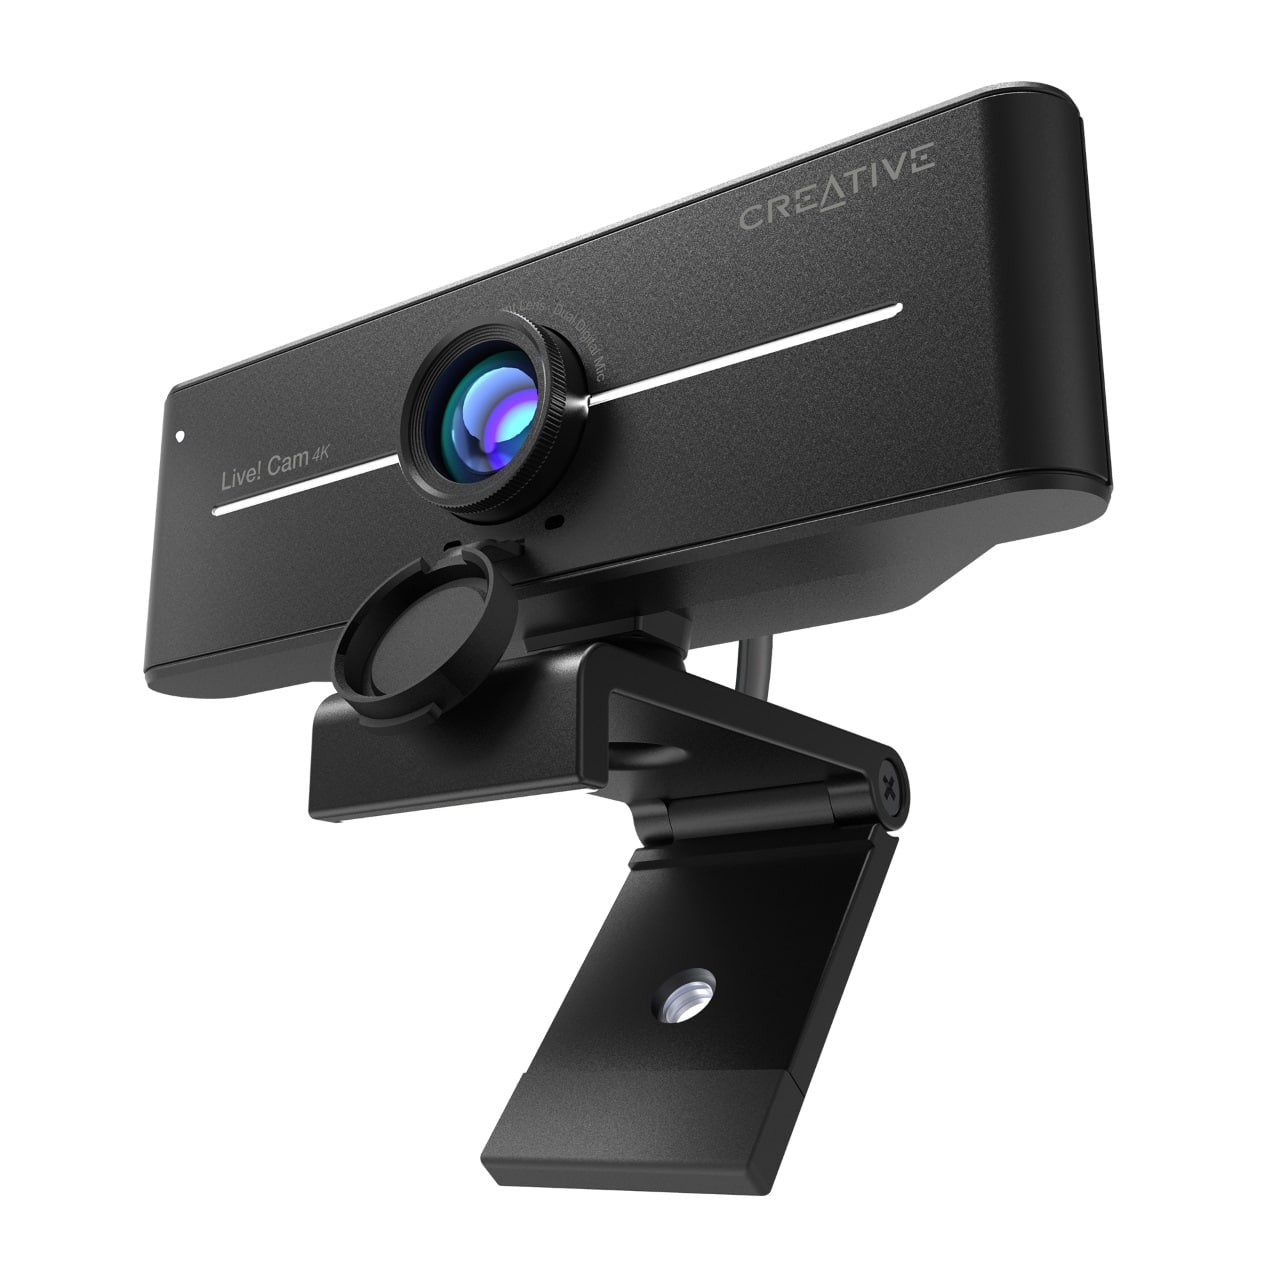 Creative Live! Cam Sync 4K è la nuova webcam per i creator e streamer